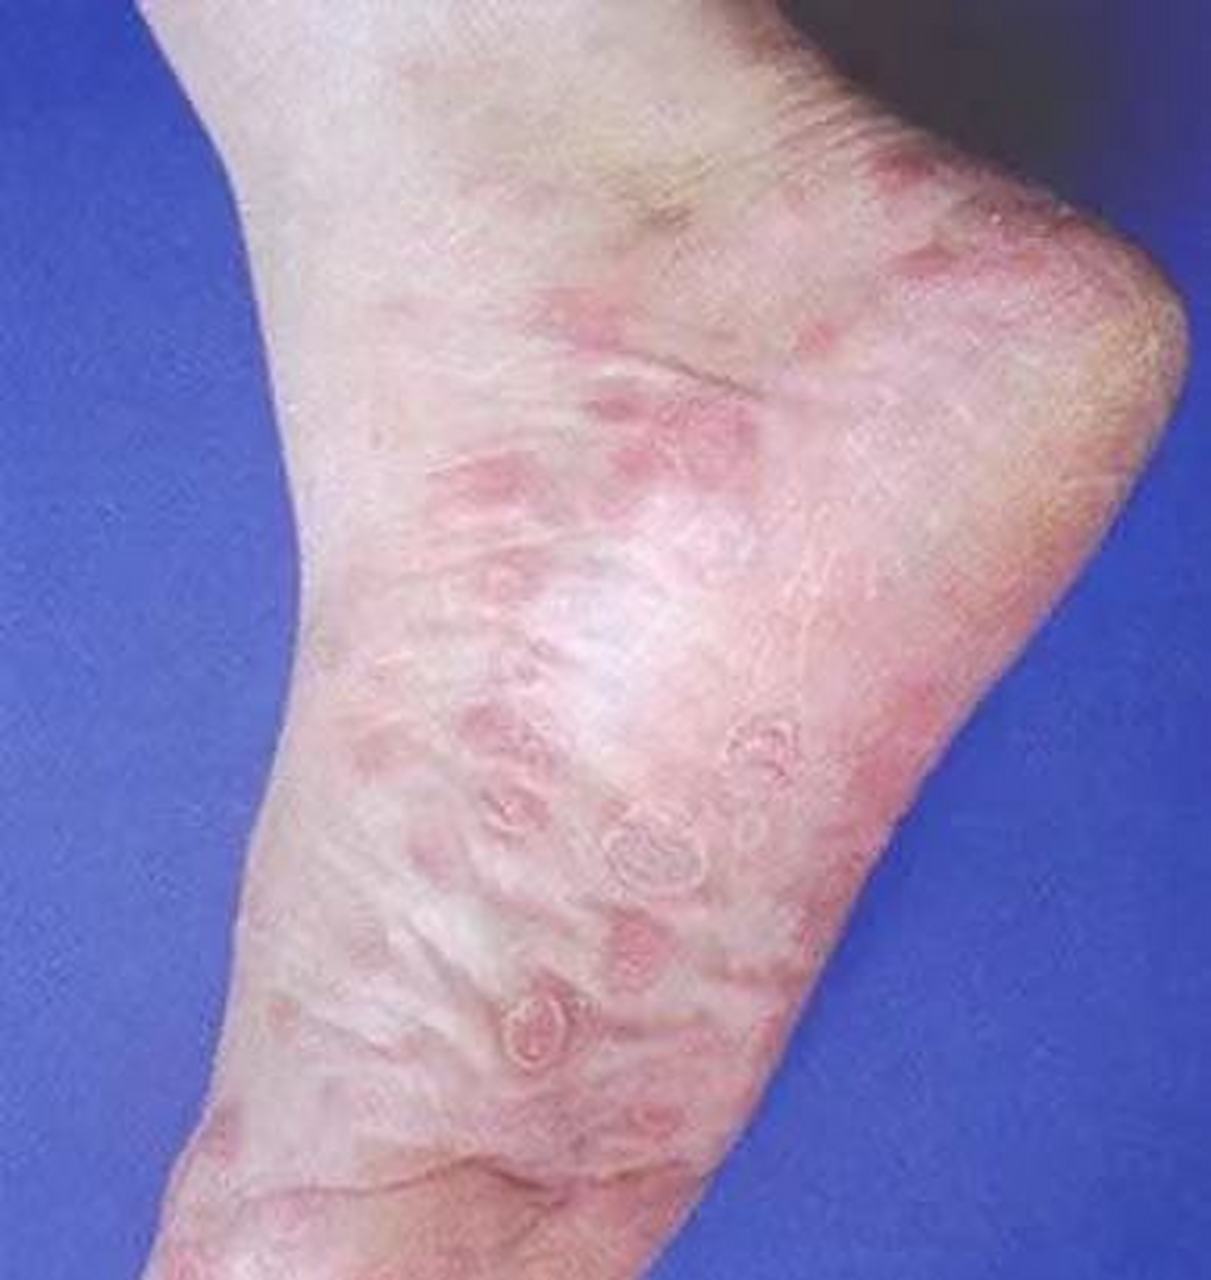 一般两个脚都有,不痛不痒,主要是治疗梅毒(青霉素),皮疹就能消退,这个